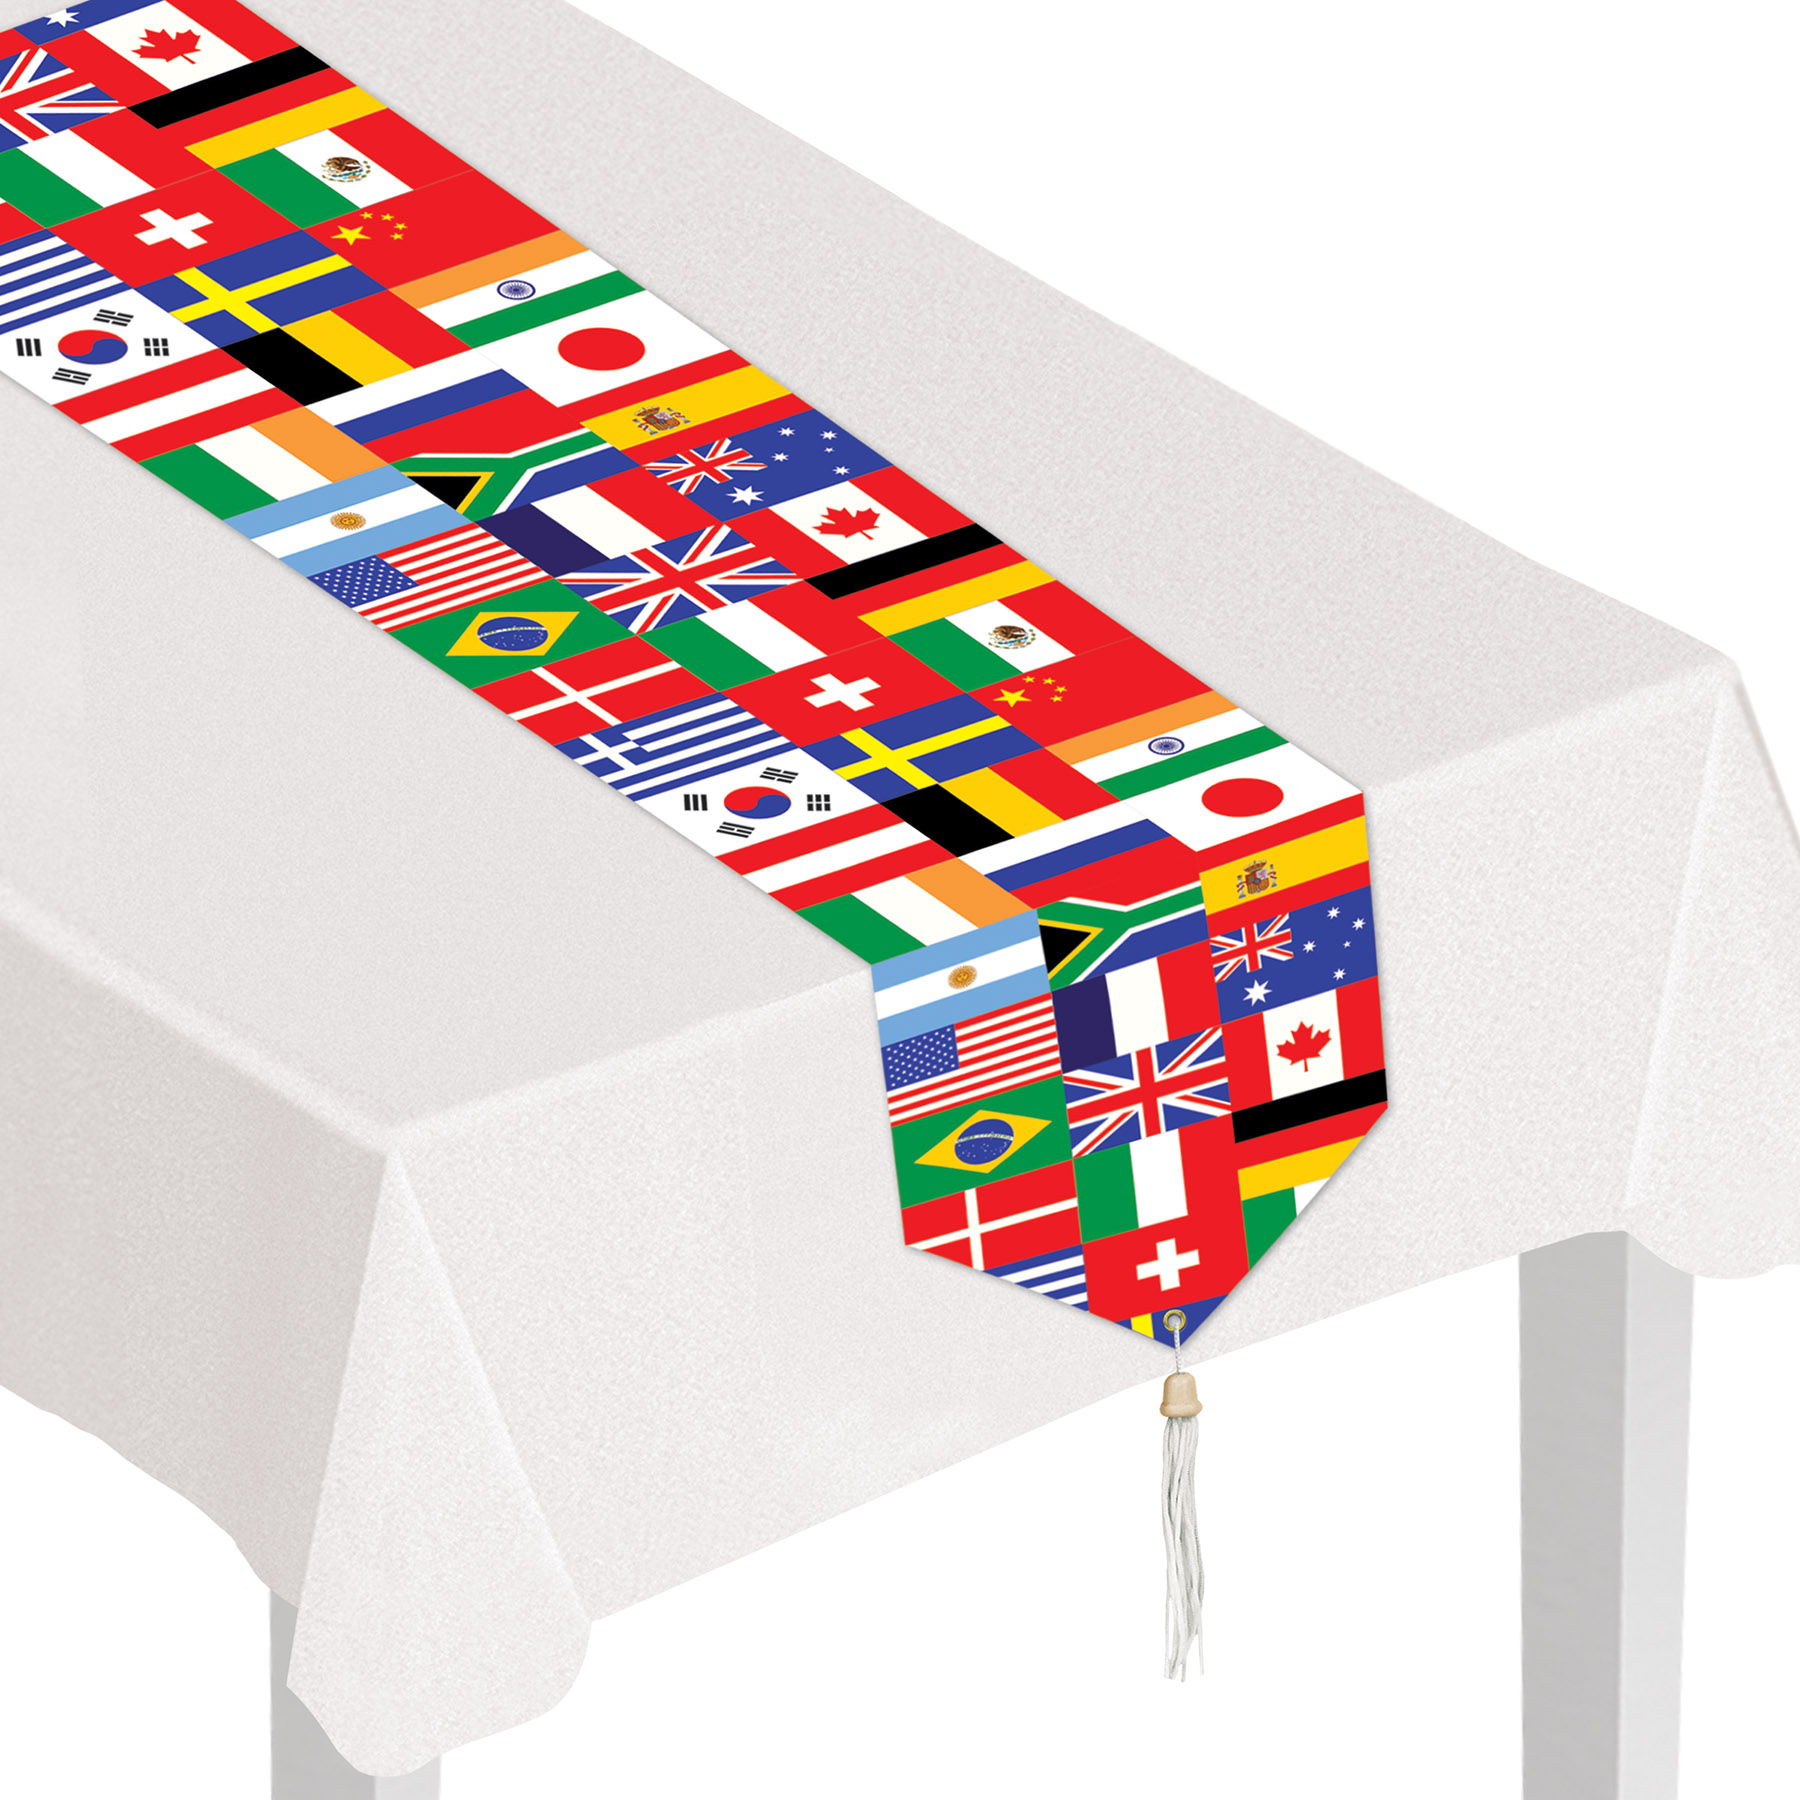 Printed International FLAG Table Runner